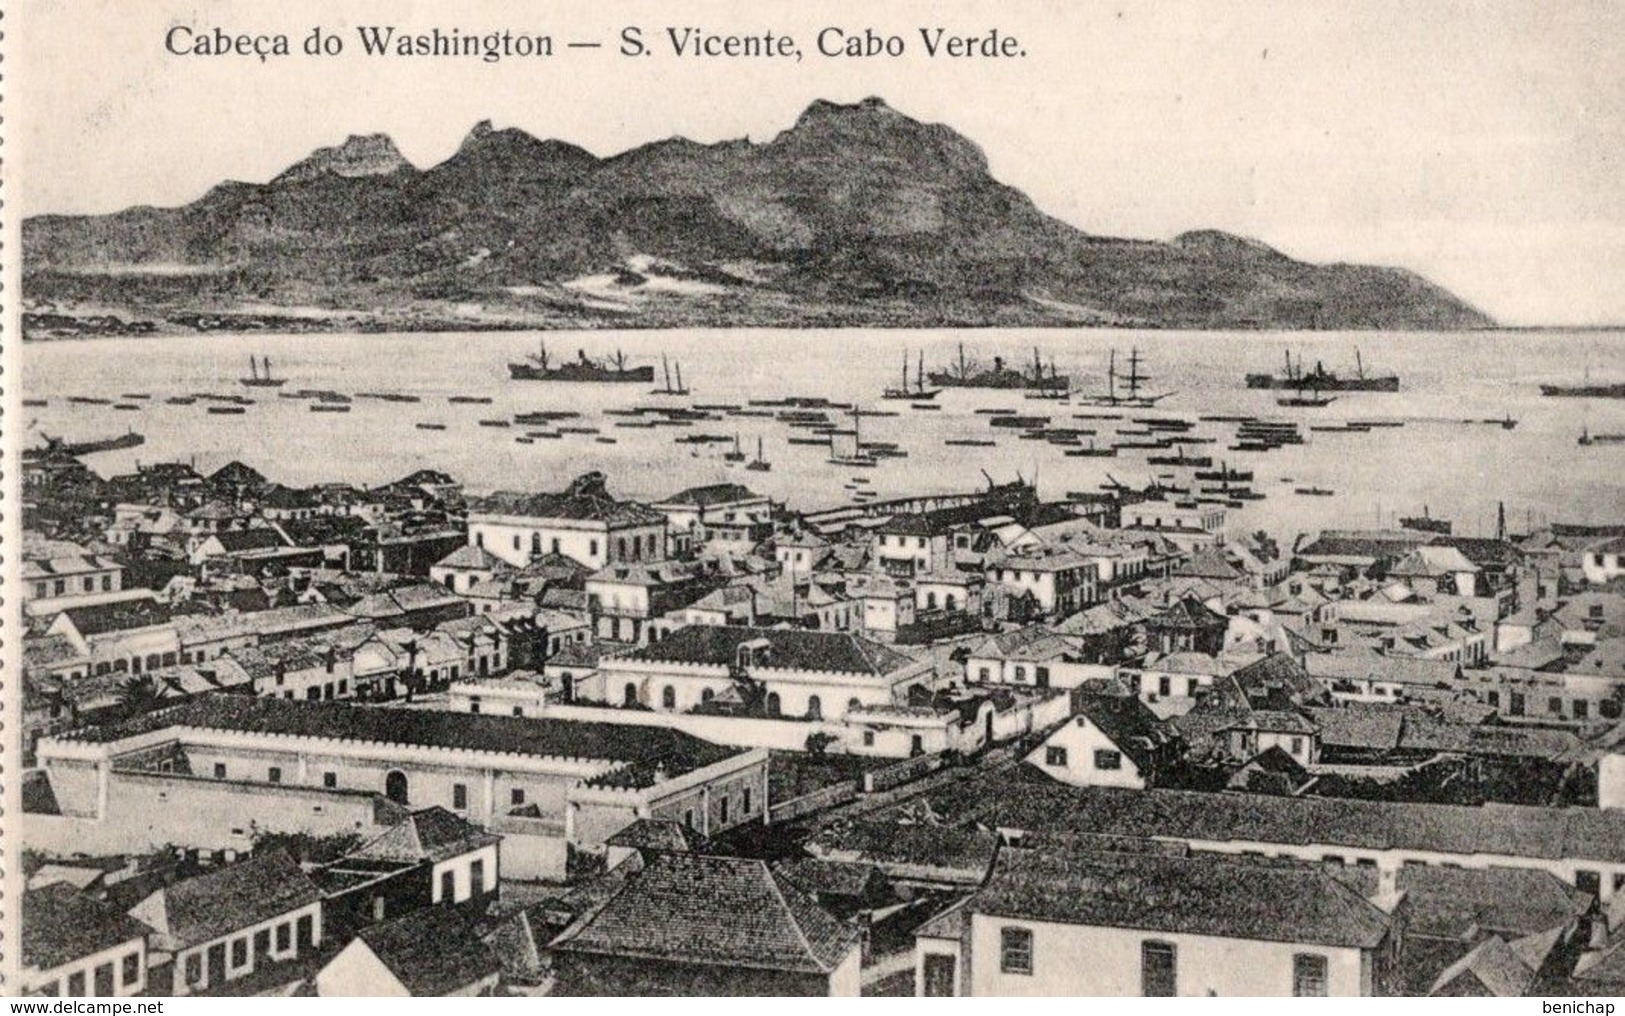 CPA CAP VERT - CABECA DO WASHINGTON - S. VICENTE - CABO VERDE - NEUVE - NON CIRCULEE - Cape Verde